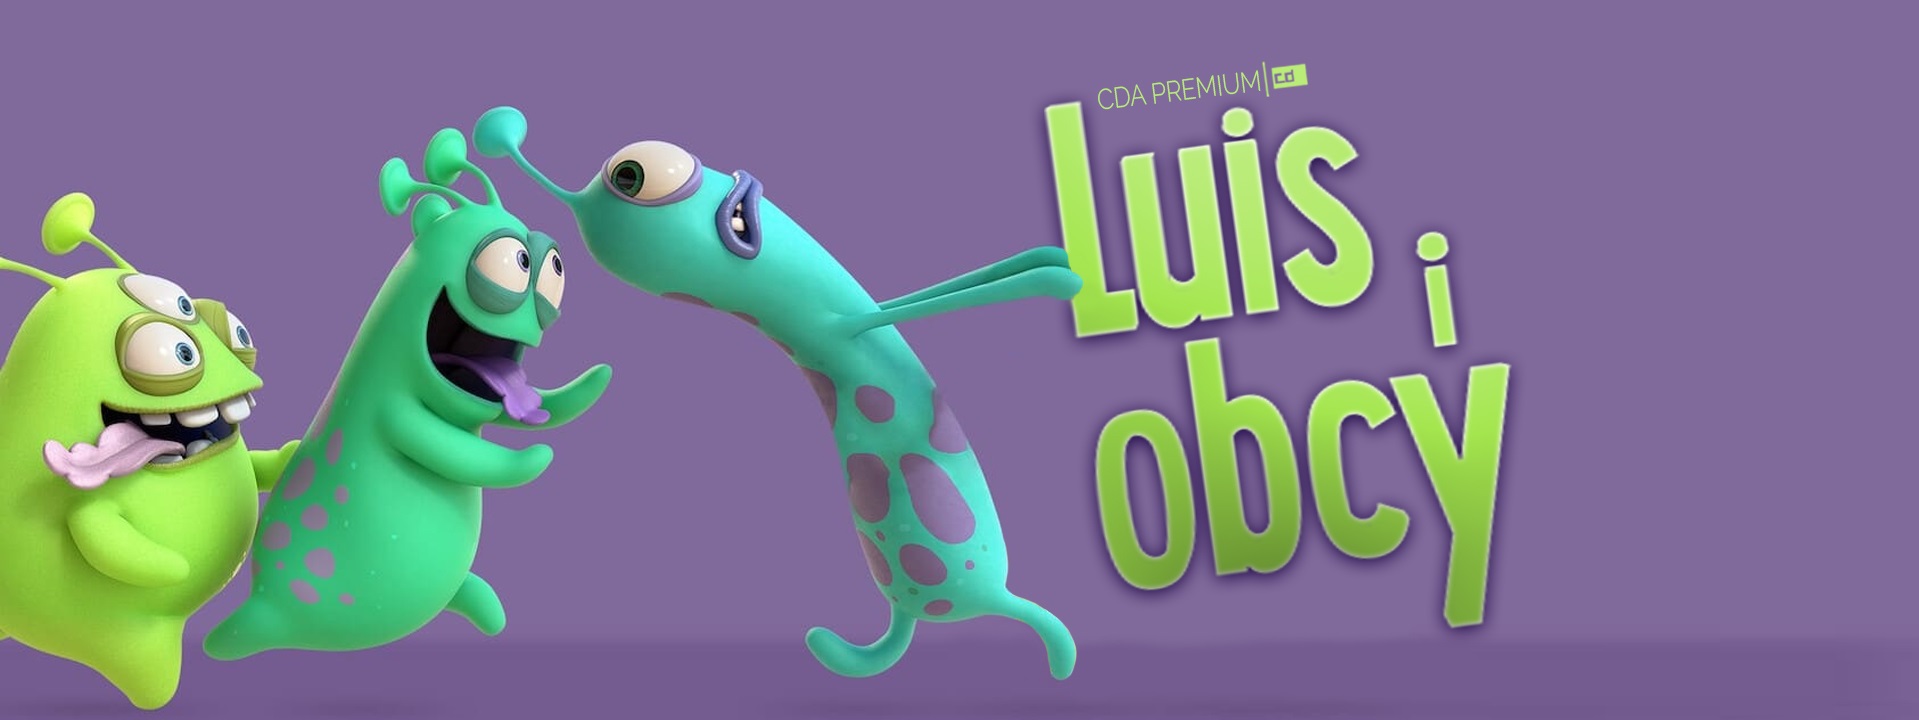 Luis i obcy (2018) Dubbing PL